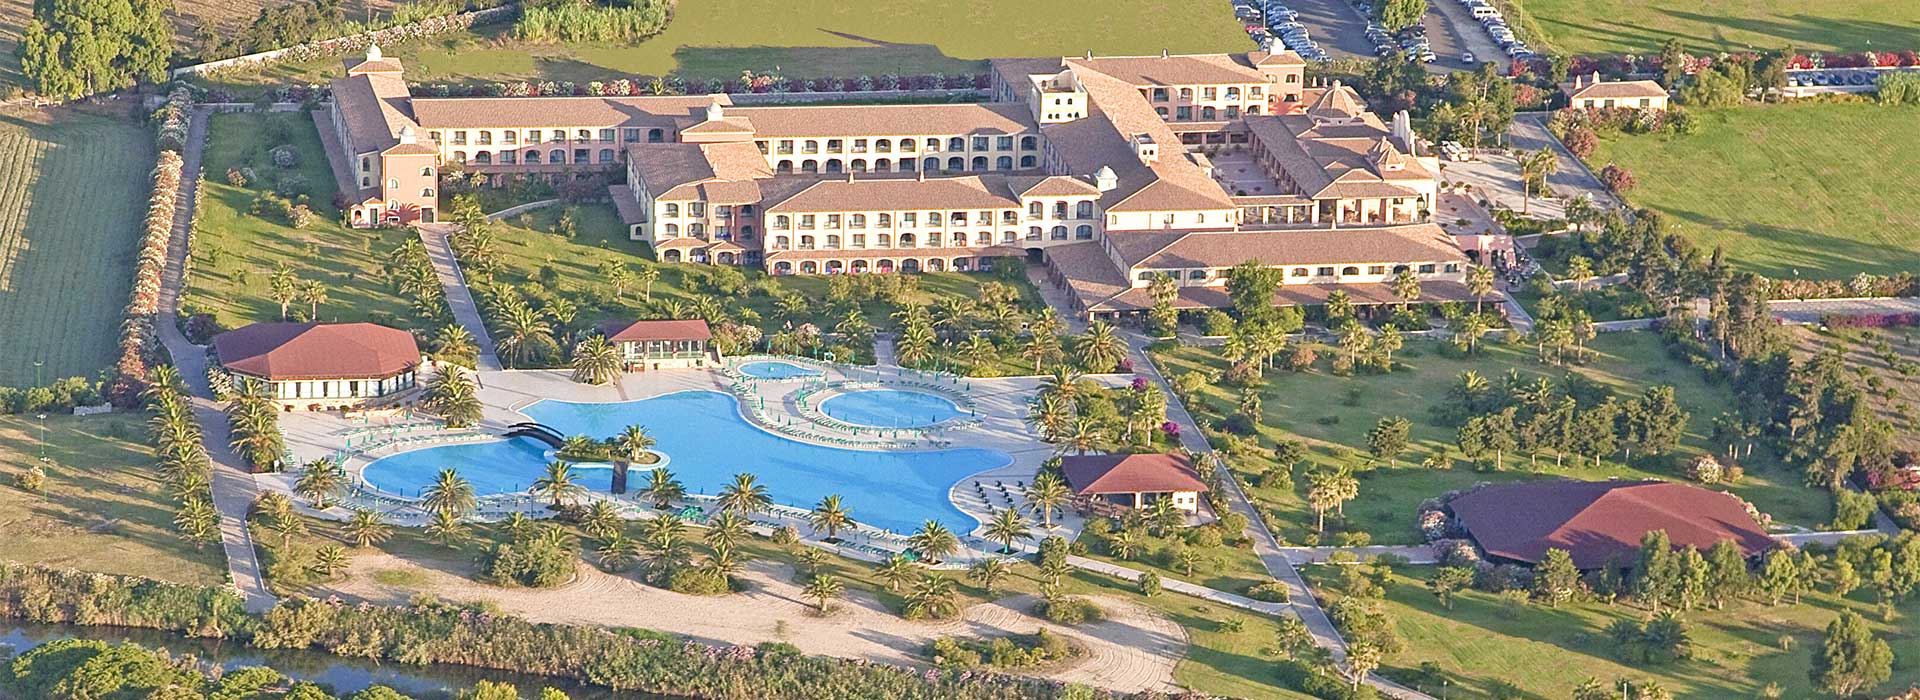 Miglior prezzo Club Hotel Marina Beach Orosei Sardegna Volo Incluso